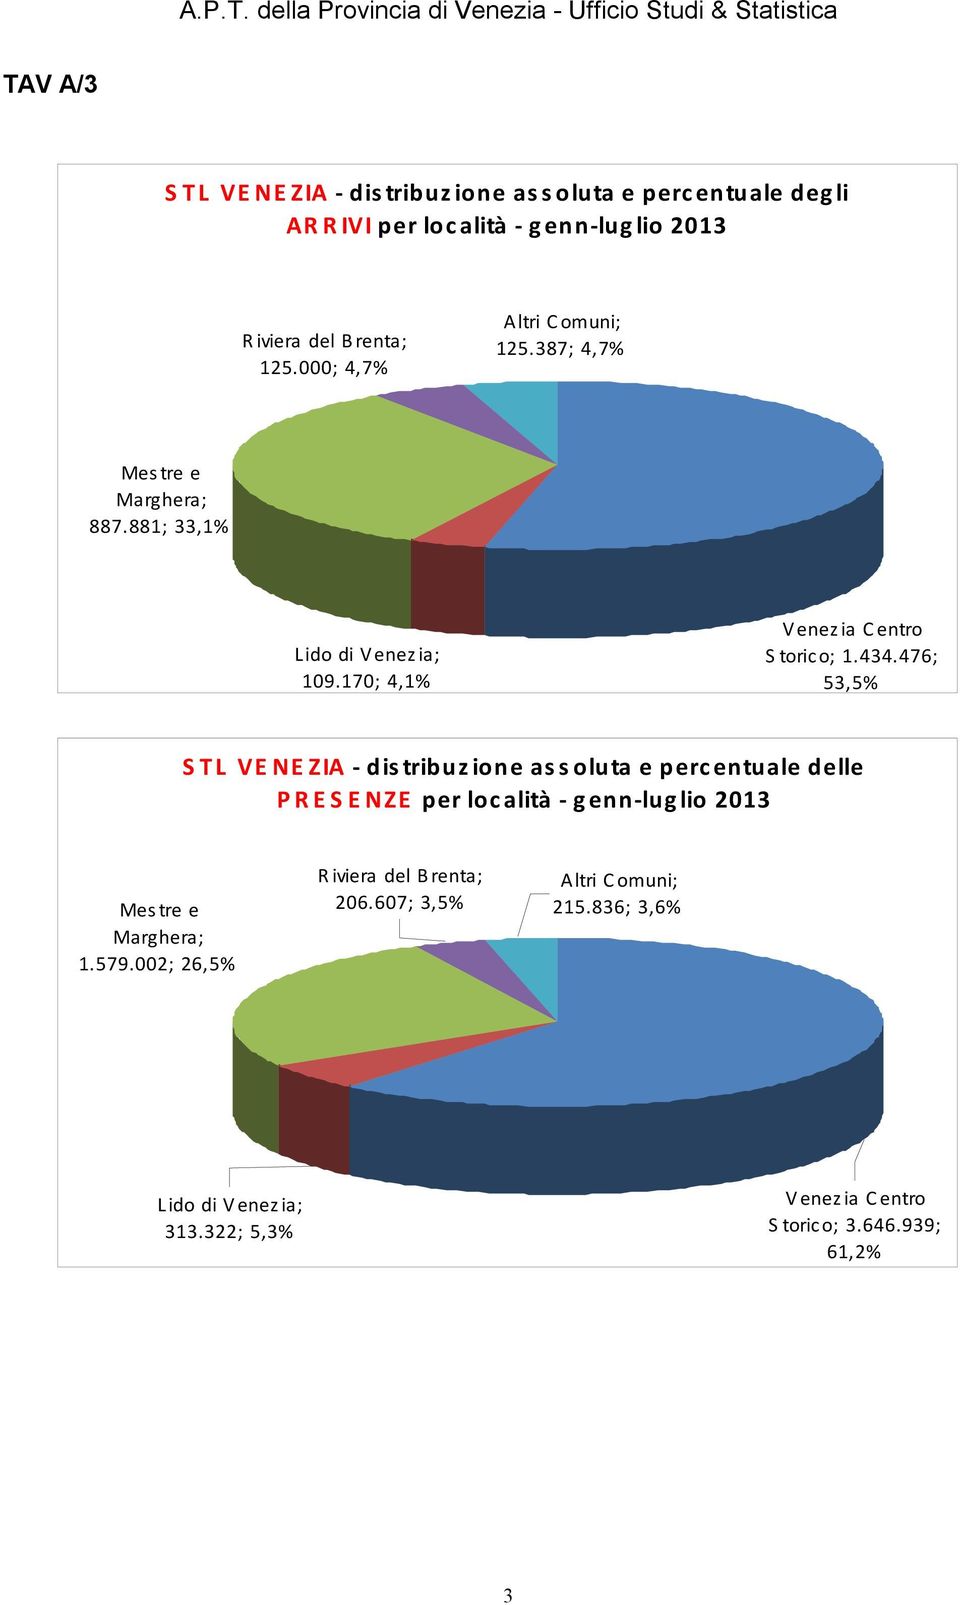 476; 53,5% STL VENEZIA - distribuzione assoluta e percentuale delle PRESENZE per località - genn-luglio 2013 Mestre e Marghera; 1.579.